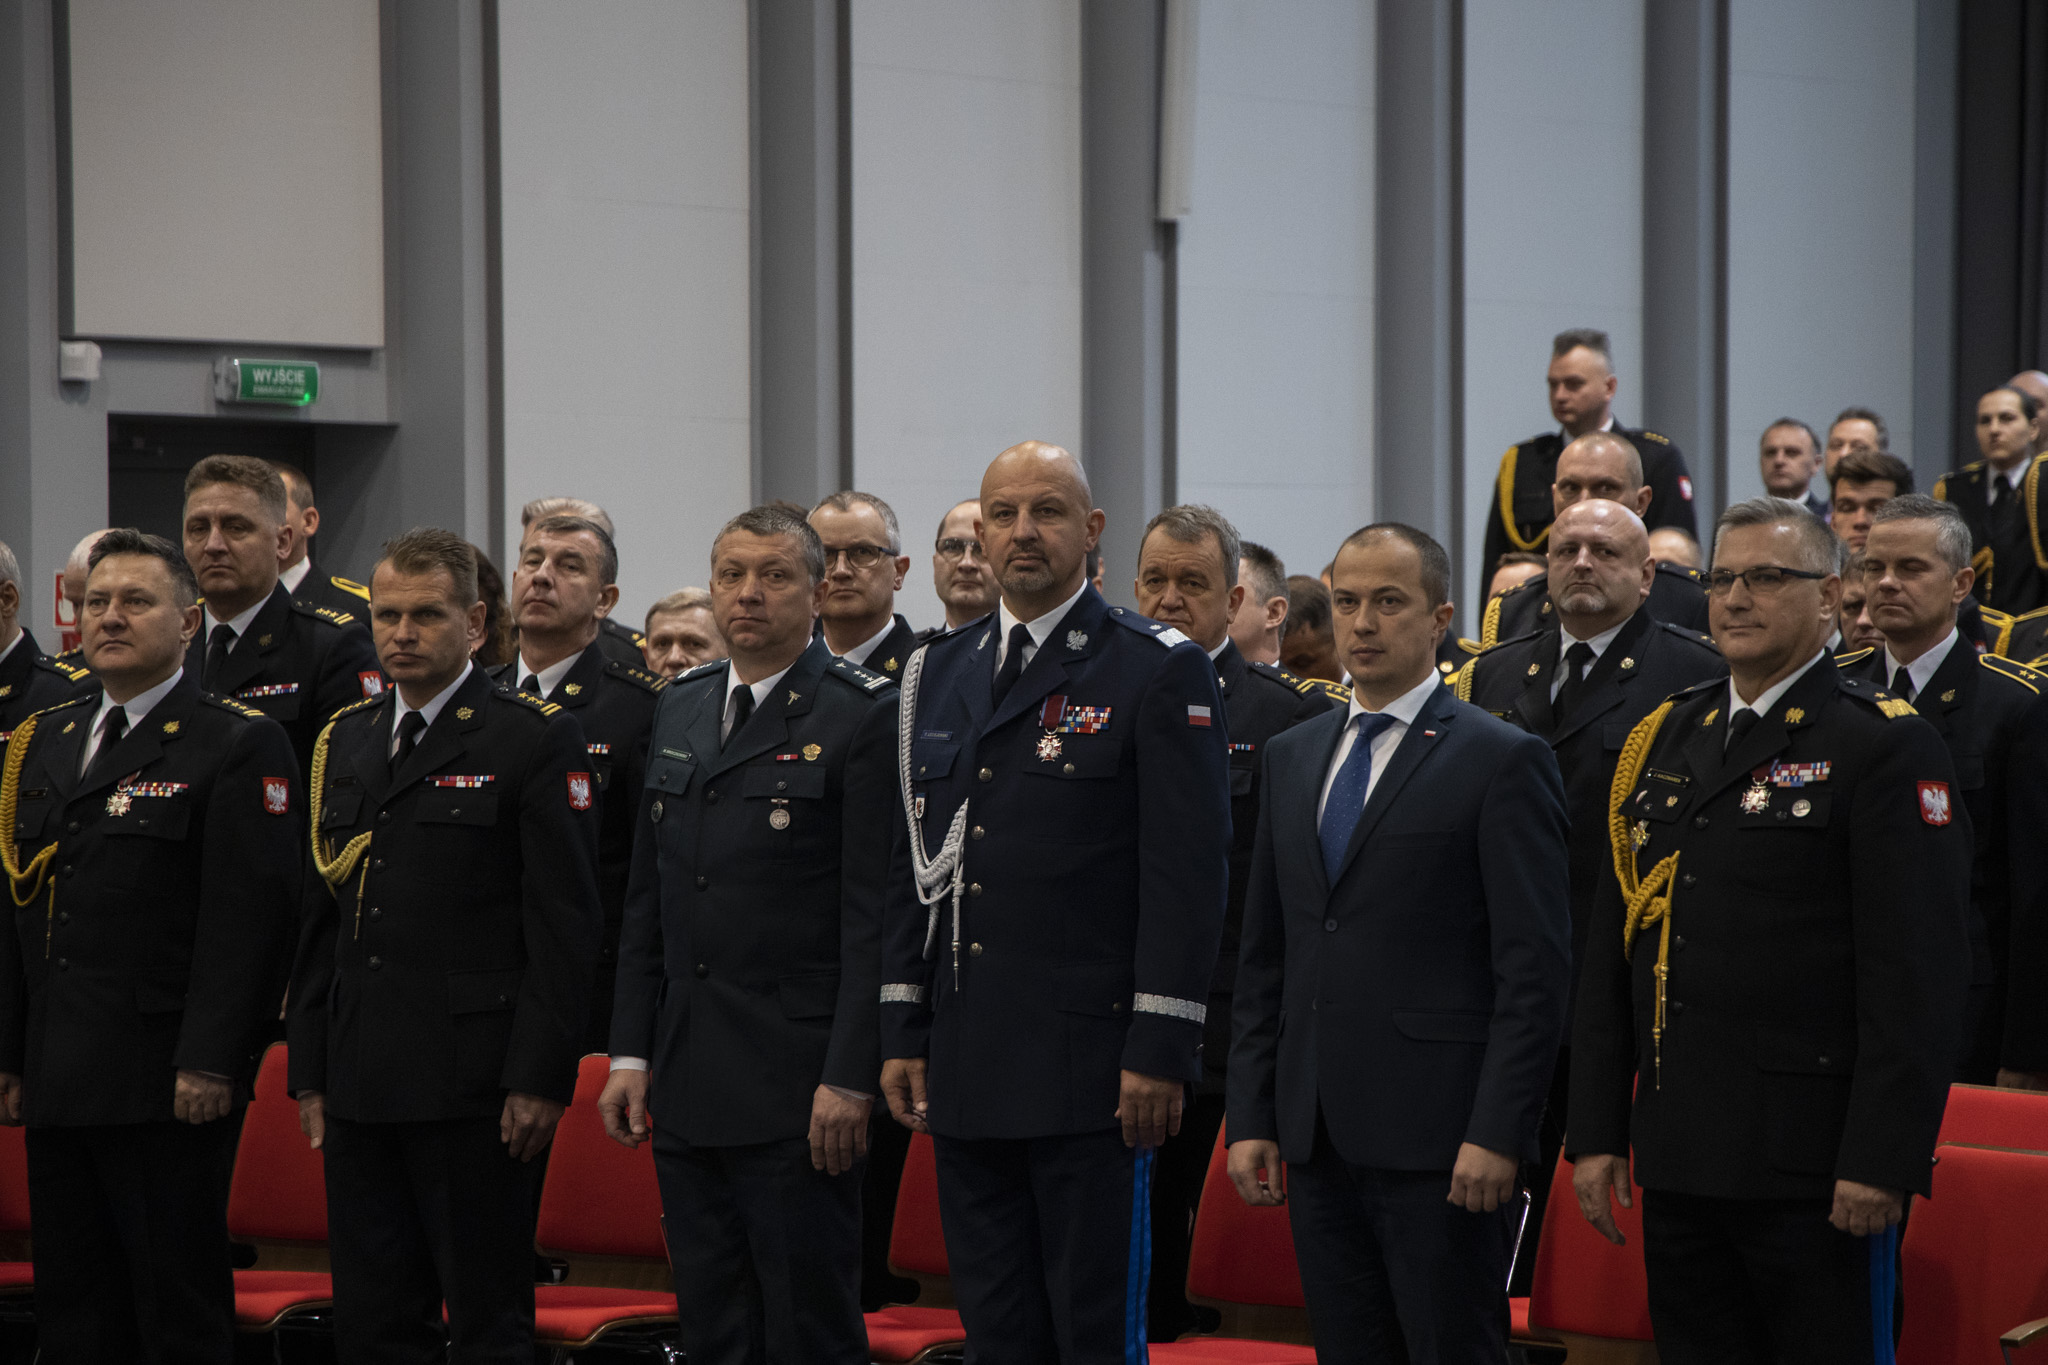 Widok na pierwszy rząd gości uroczystości - mundurowi w mundurach galowych, przedstawiciele róznych służb.